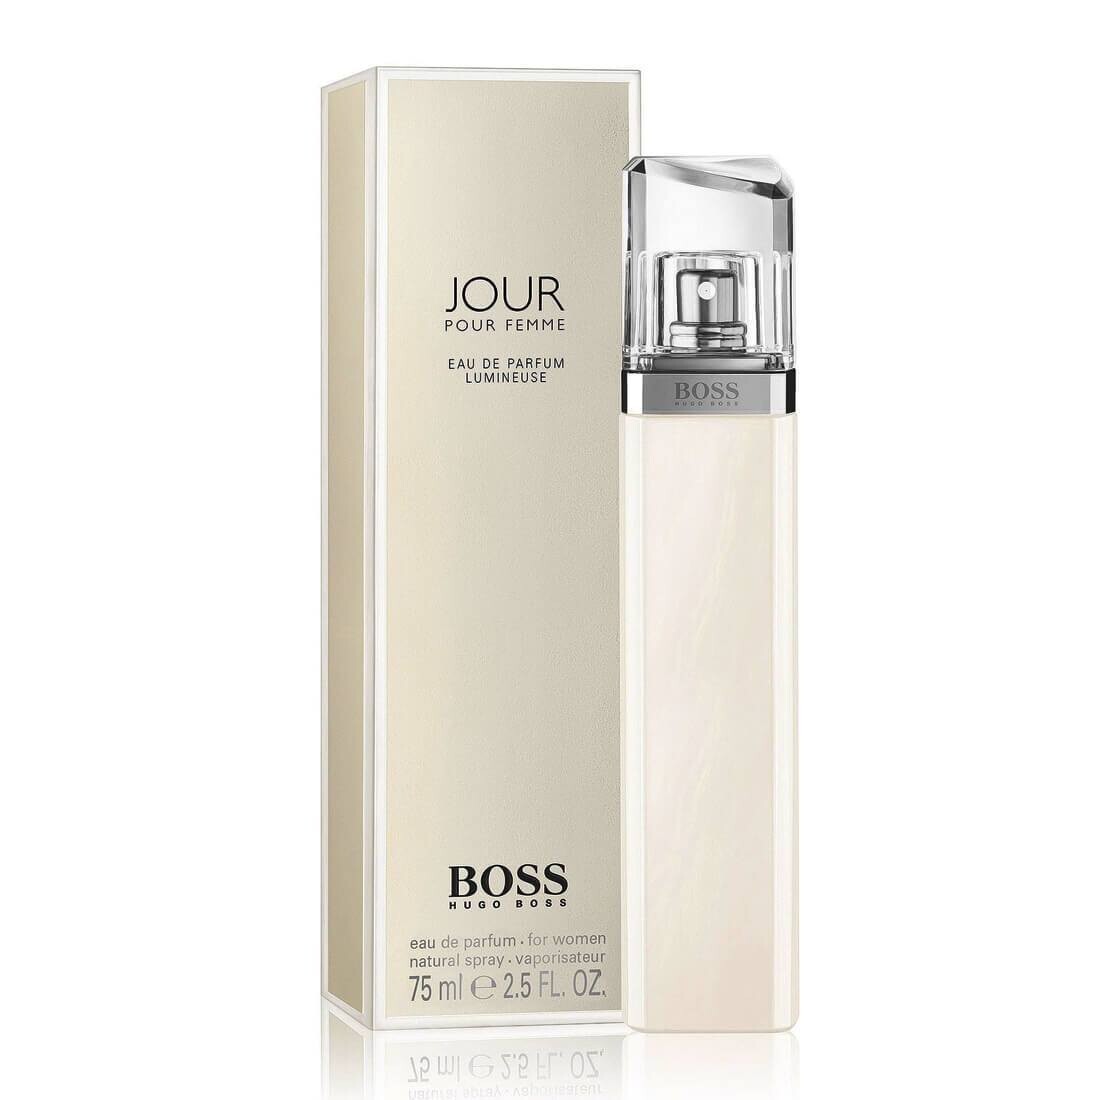 Hugo Boss Jour Lumineuse Perfume For Women – 75ml